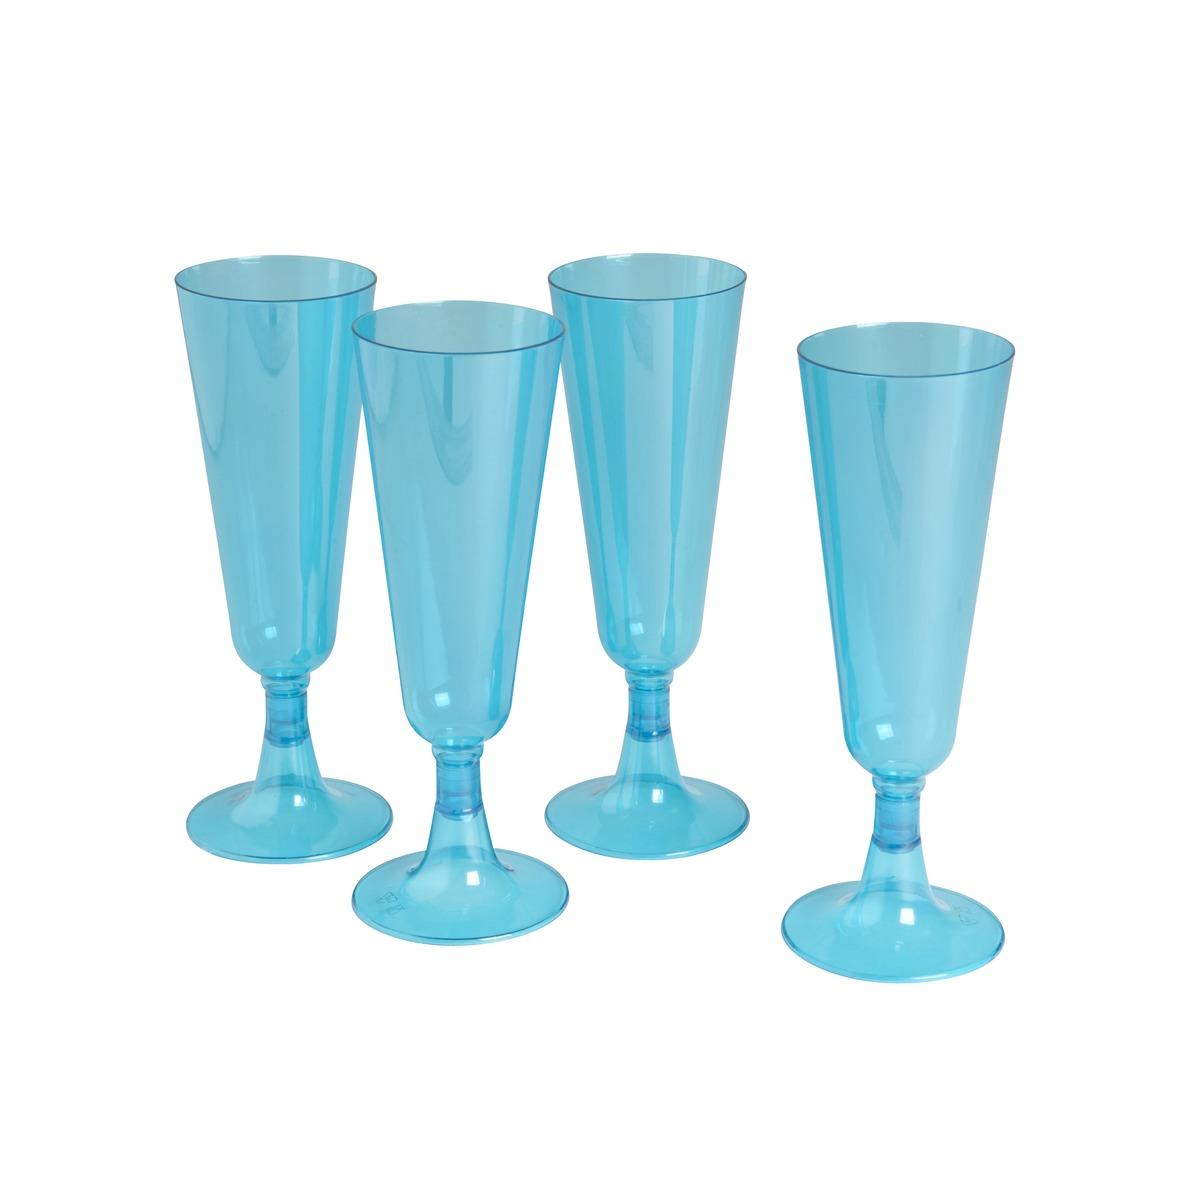 4 flûtes à champagne en plastique - 13 Cl - couleur bleu turquoise